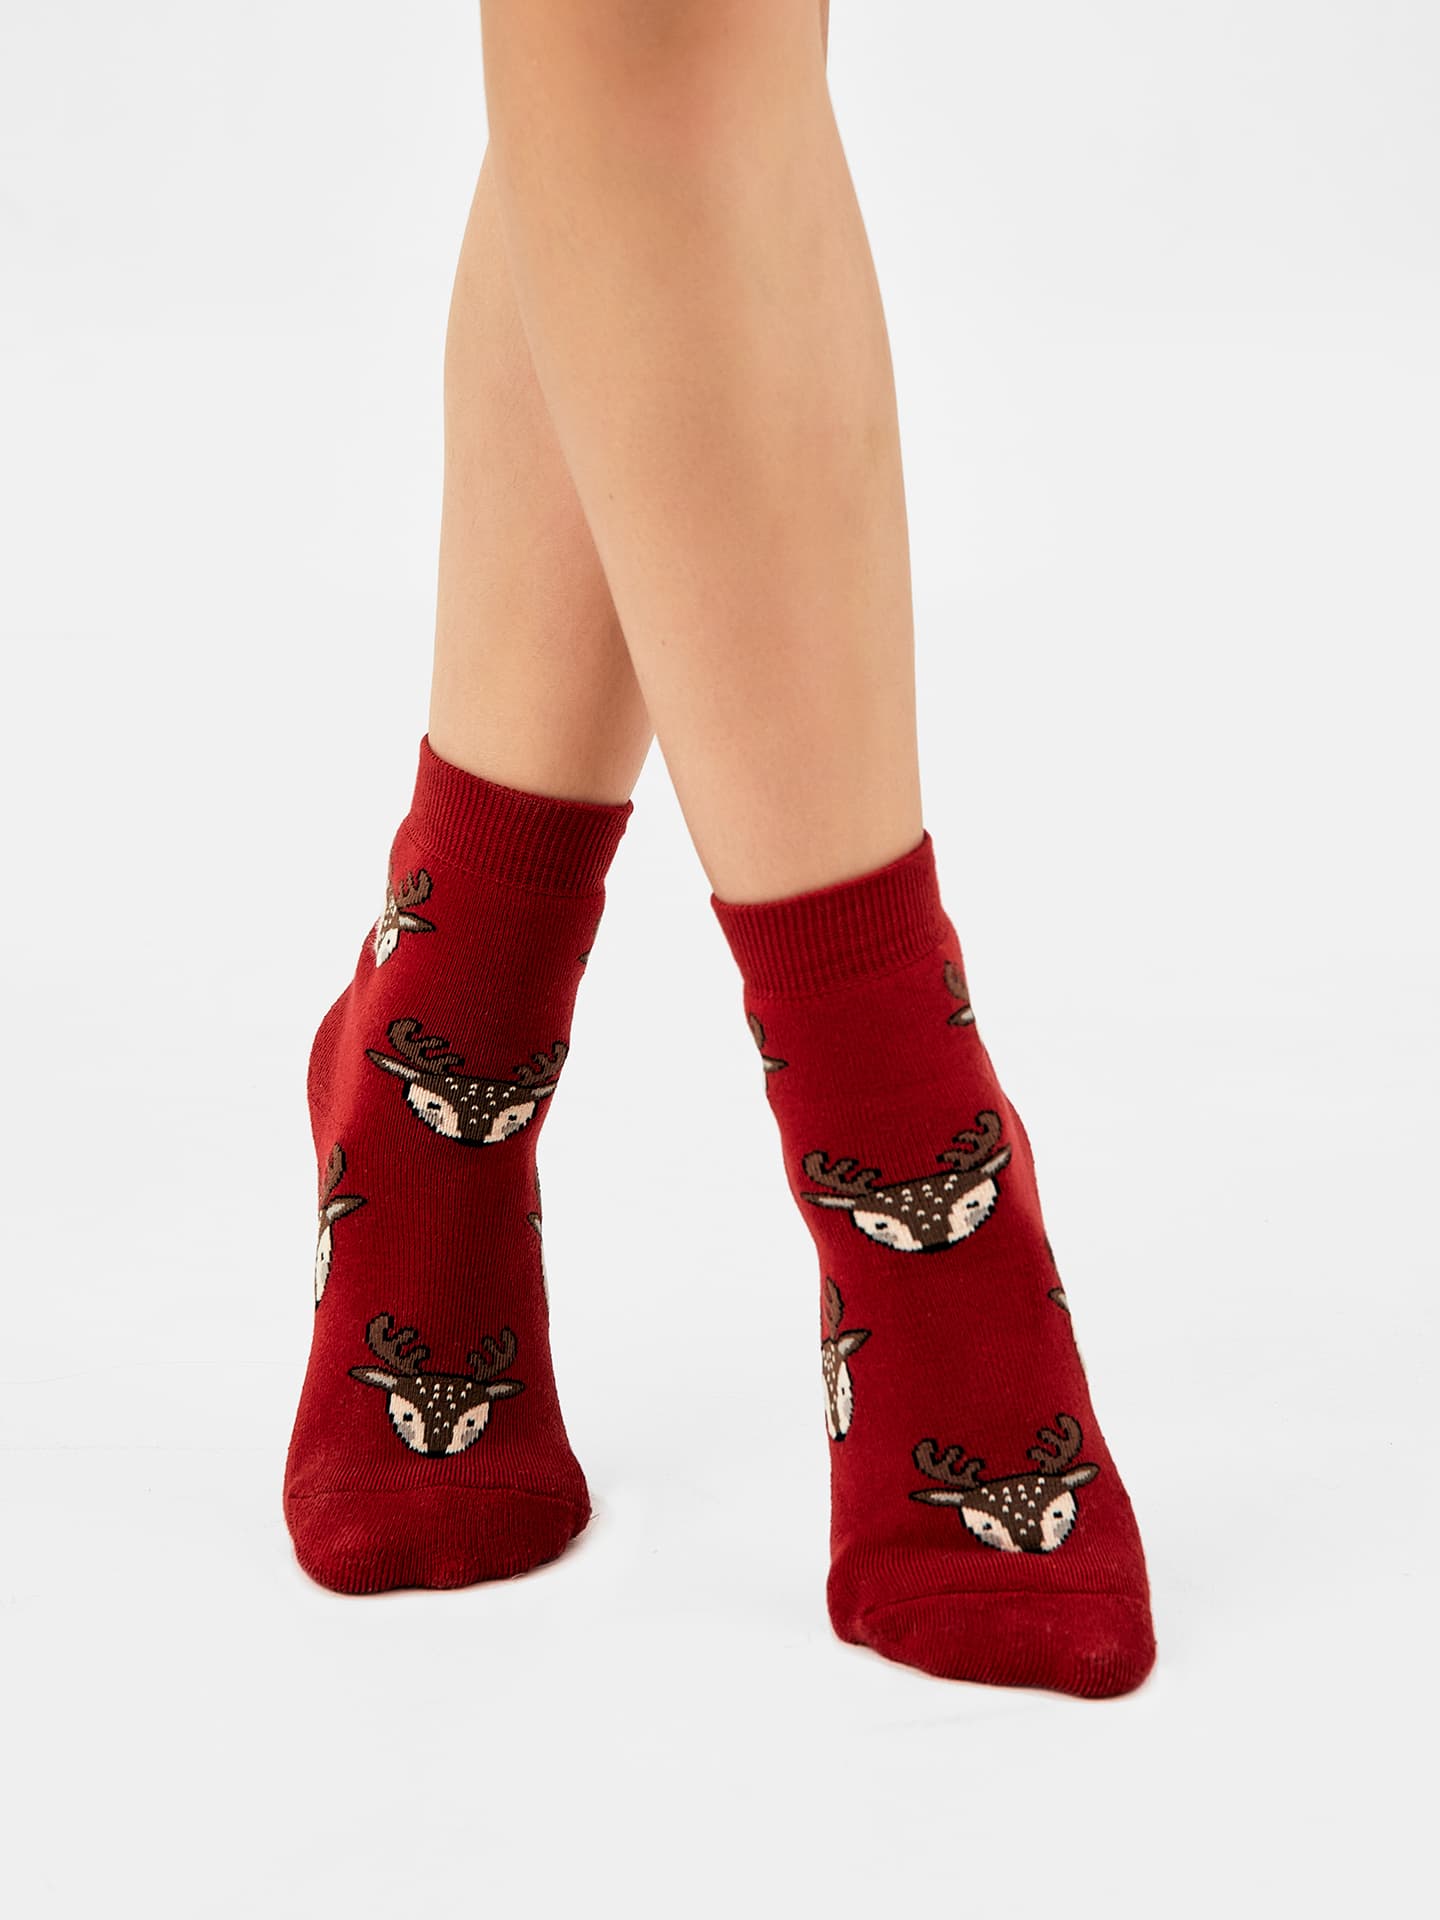 Детские махровые носки темно-красного цвета с изображением оленей